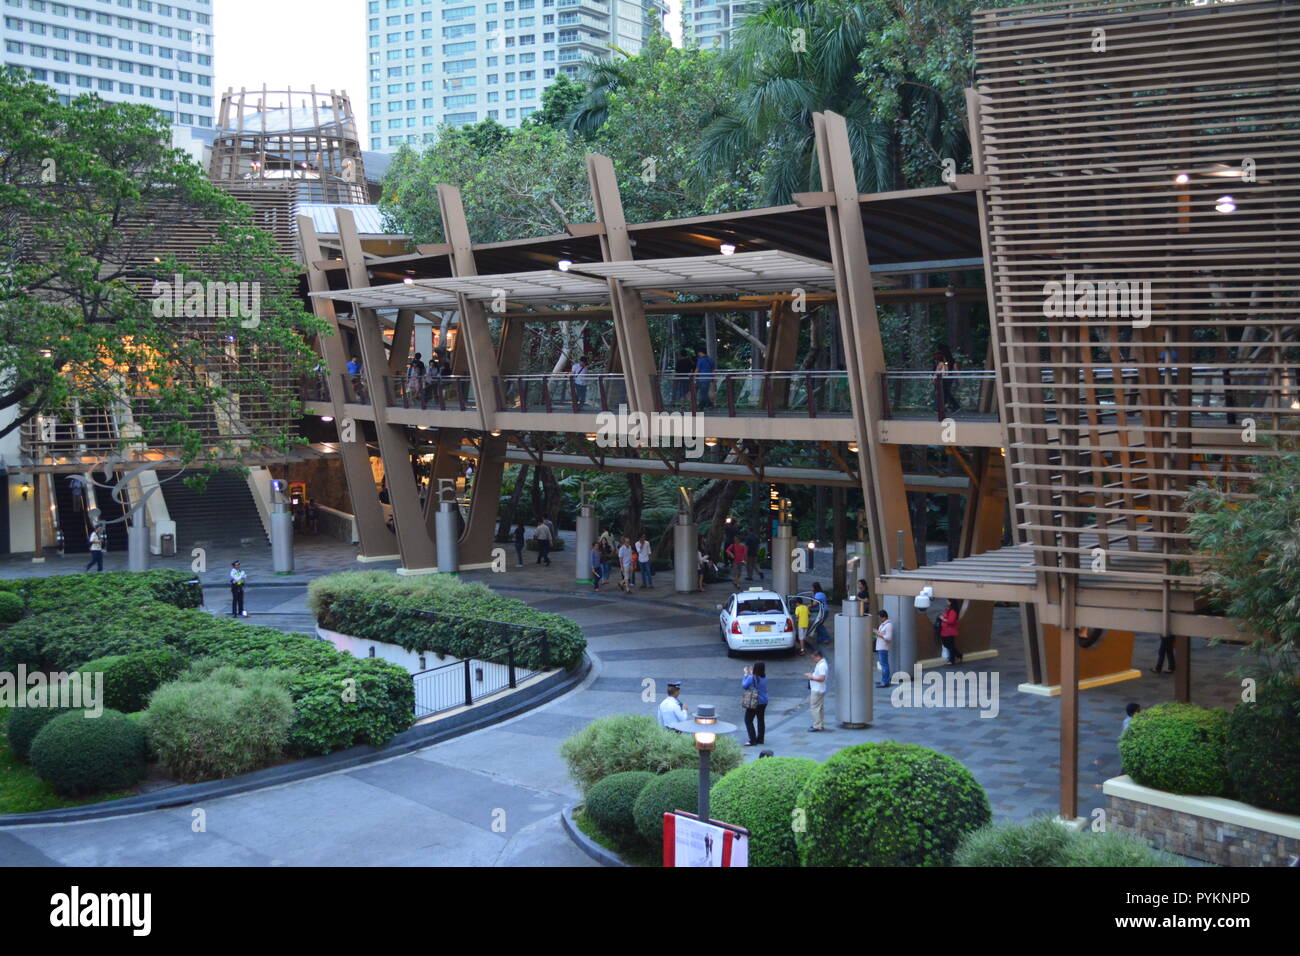 Greenbelt Mall Ayala Center Makati City Philippines Stock Photo: 223554309 - Alamy